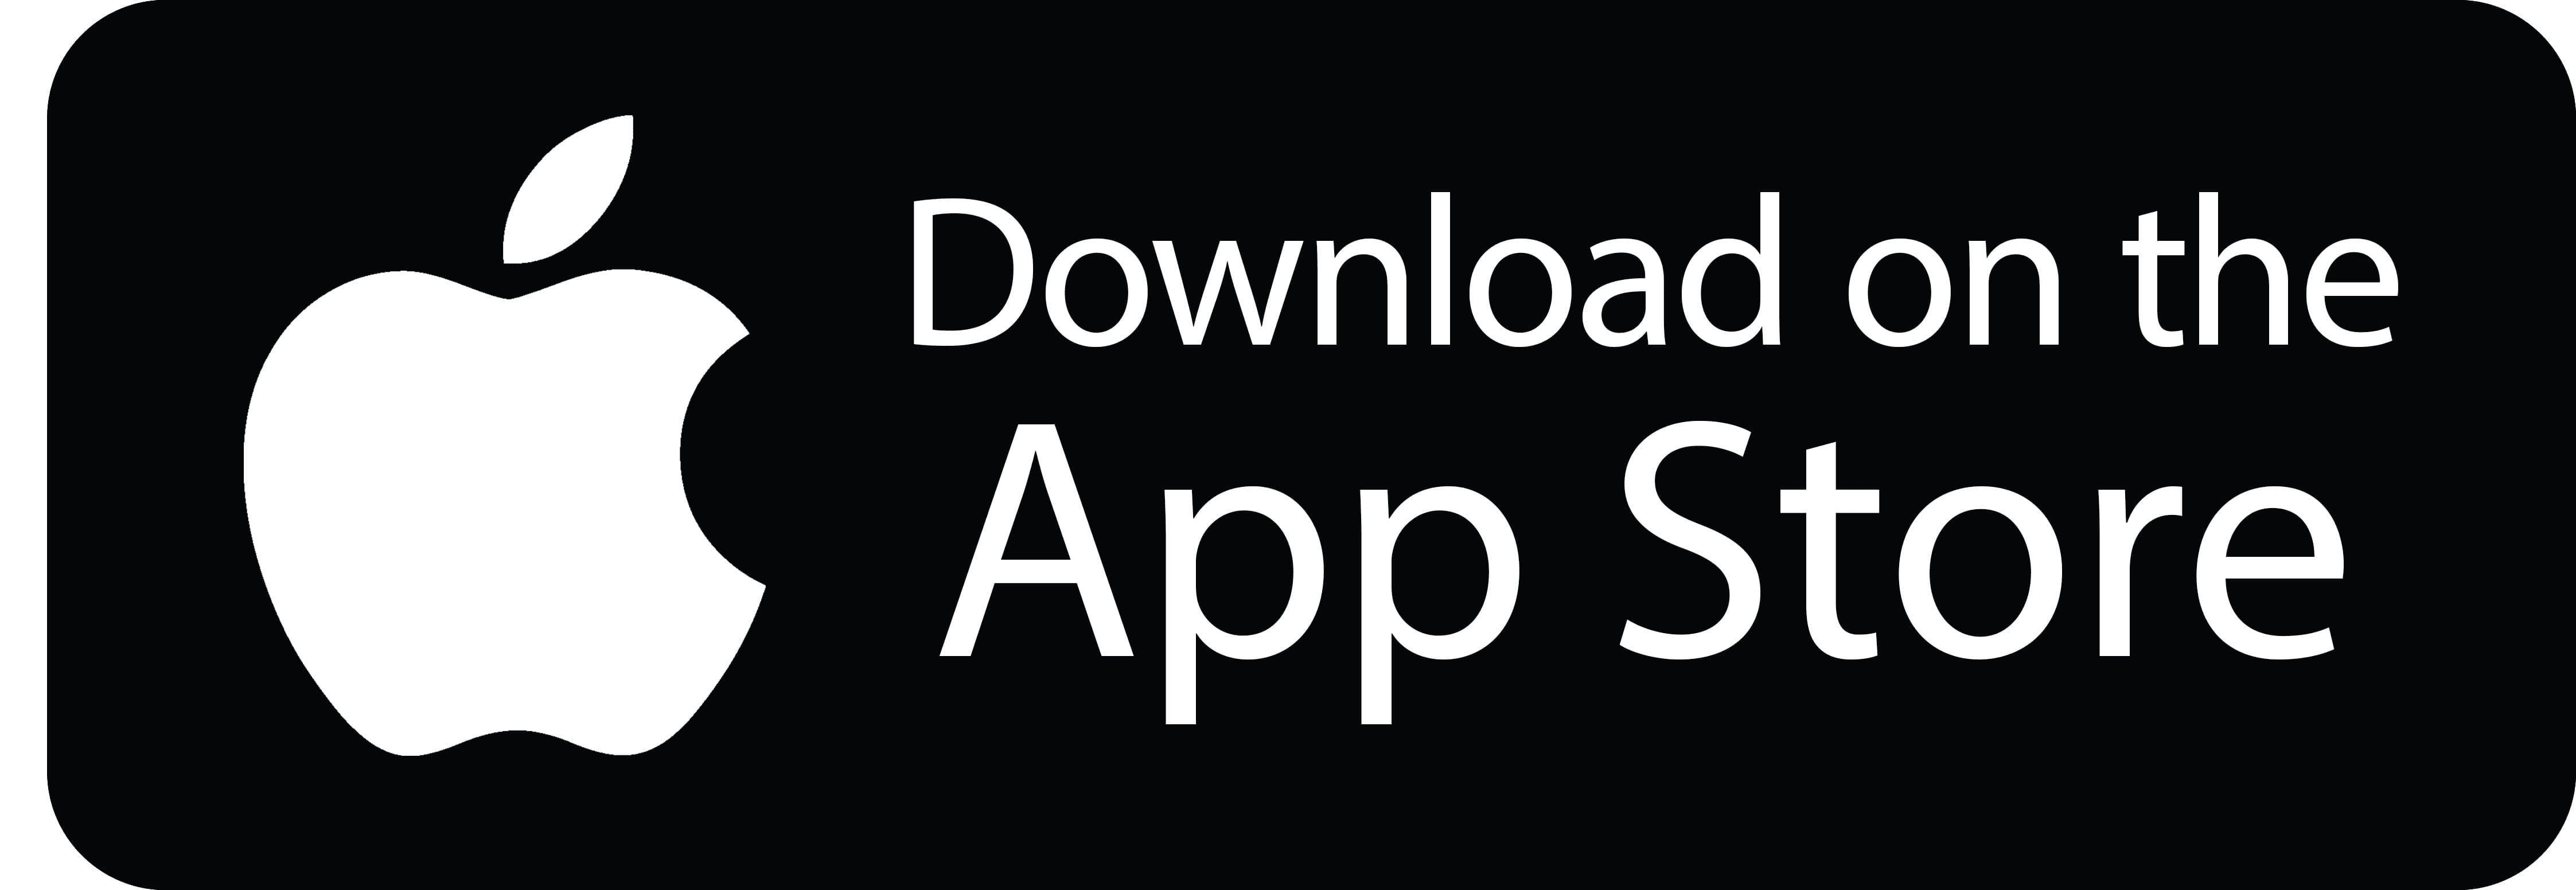 apple-app-store-logo.jpg